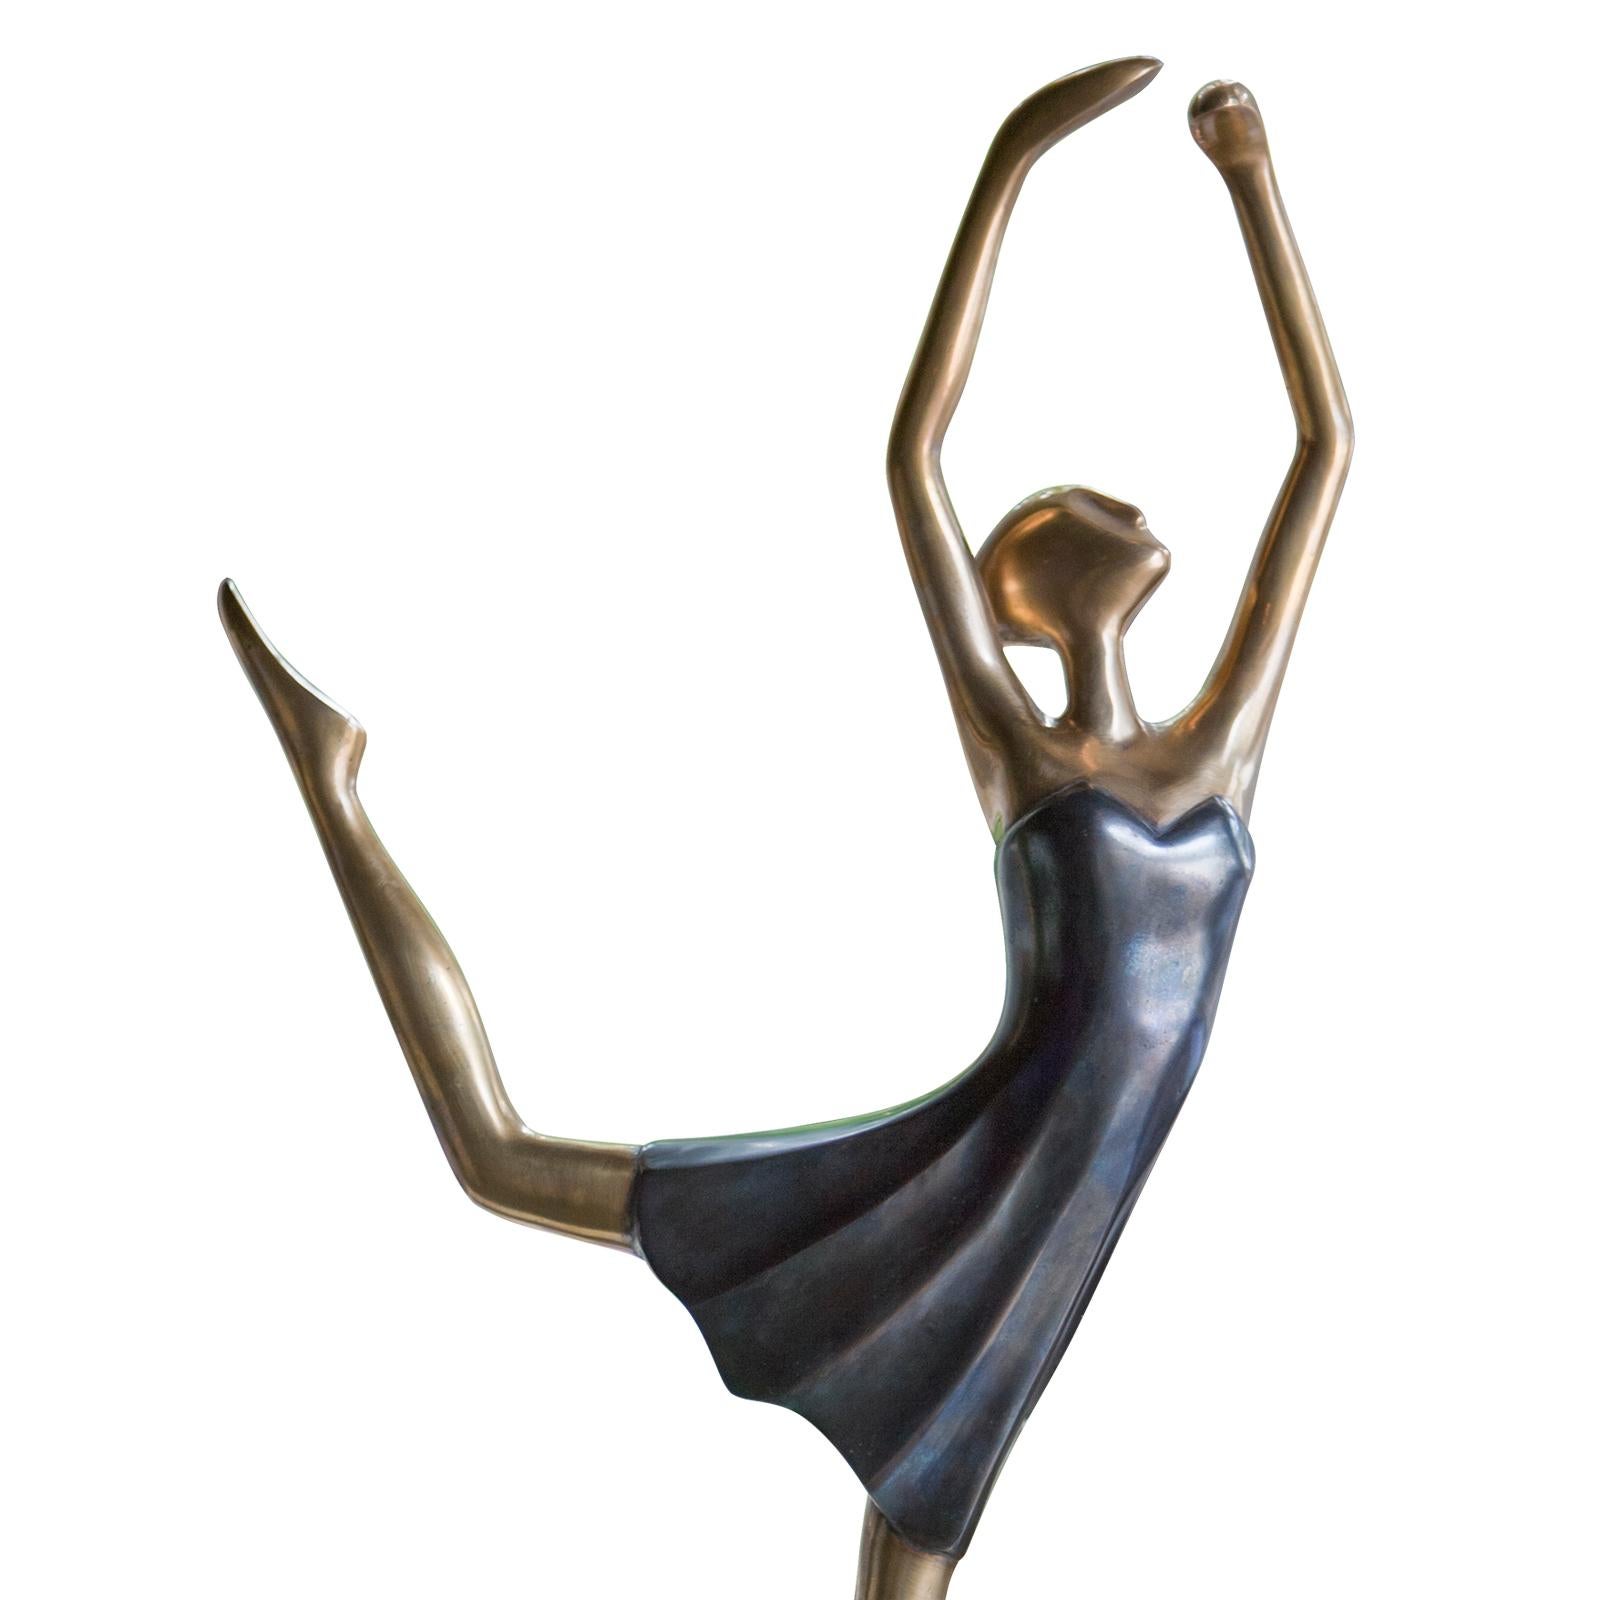 Sculpture danseuse étoile tout en laiton moulé.
Sur socle en laiton moulé. Avec une robe bleue.